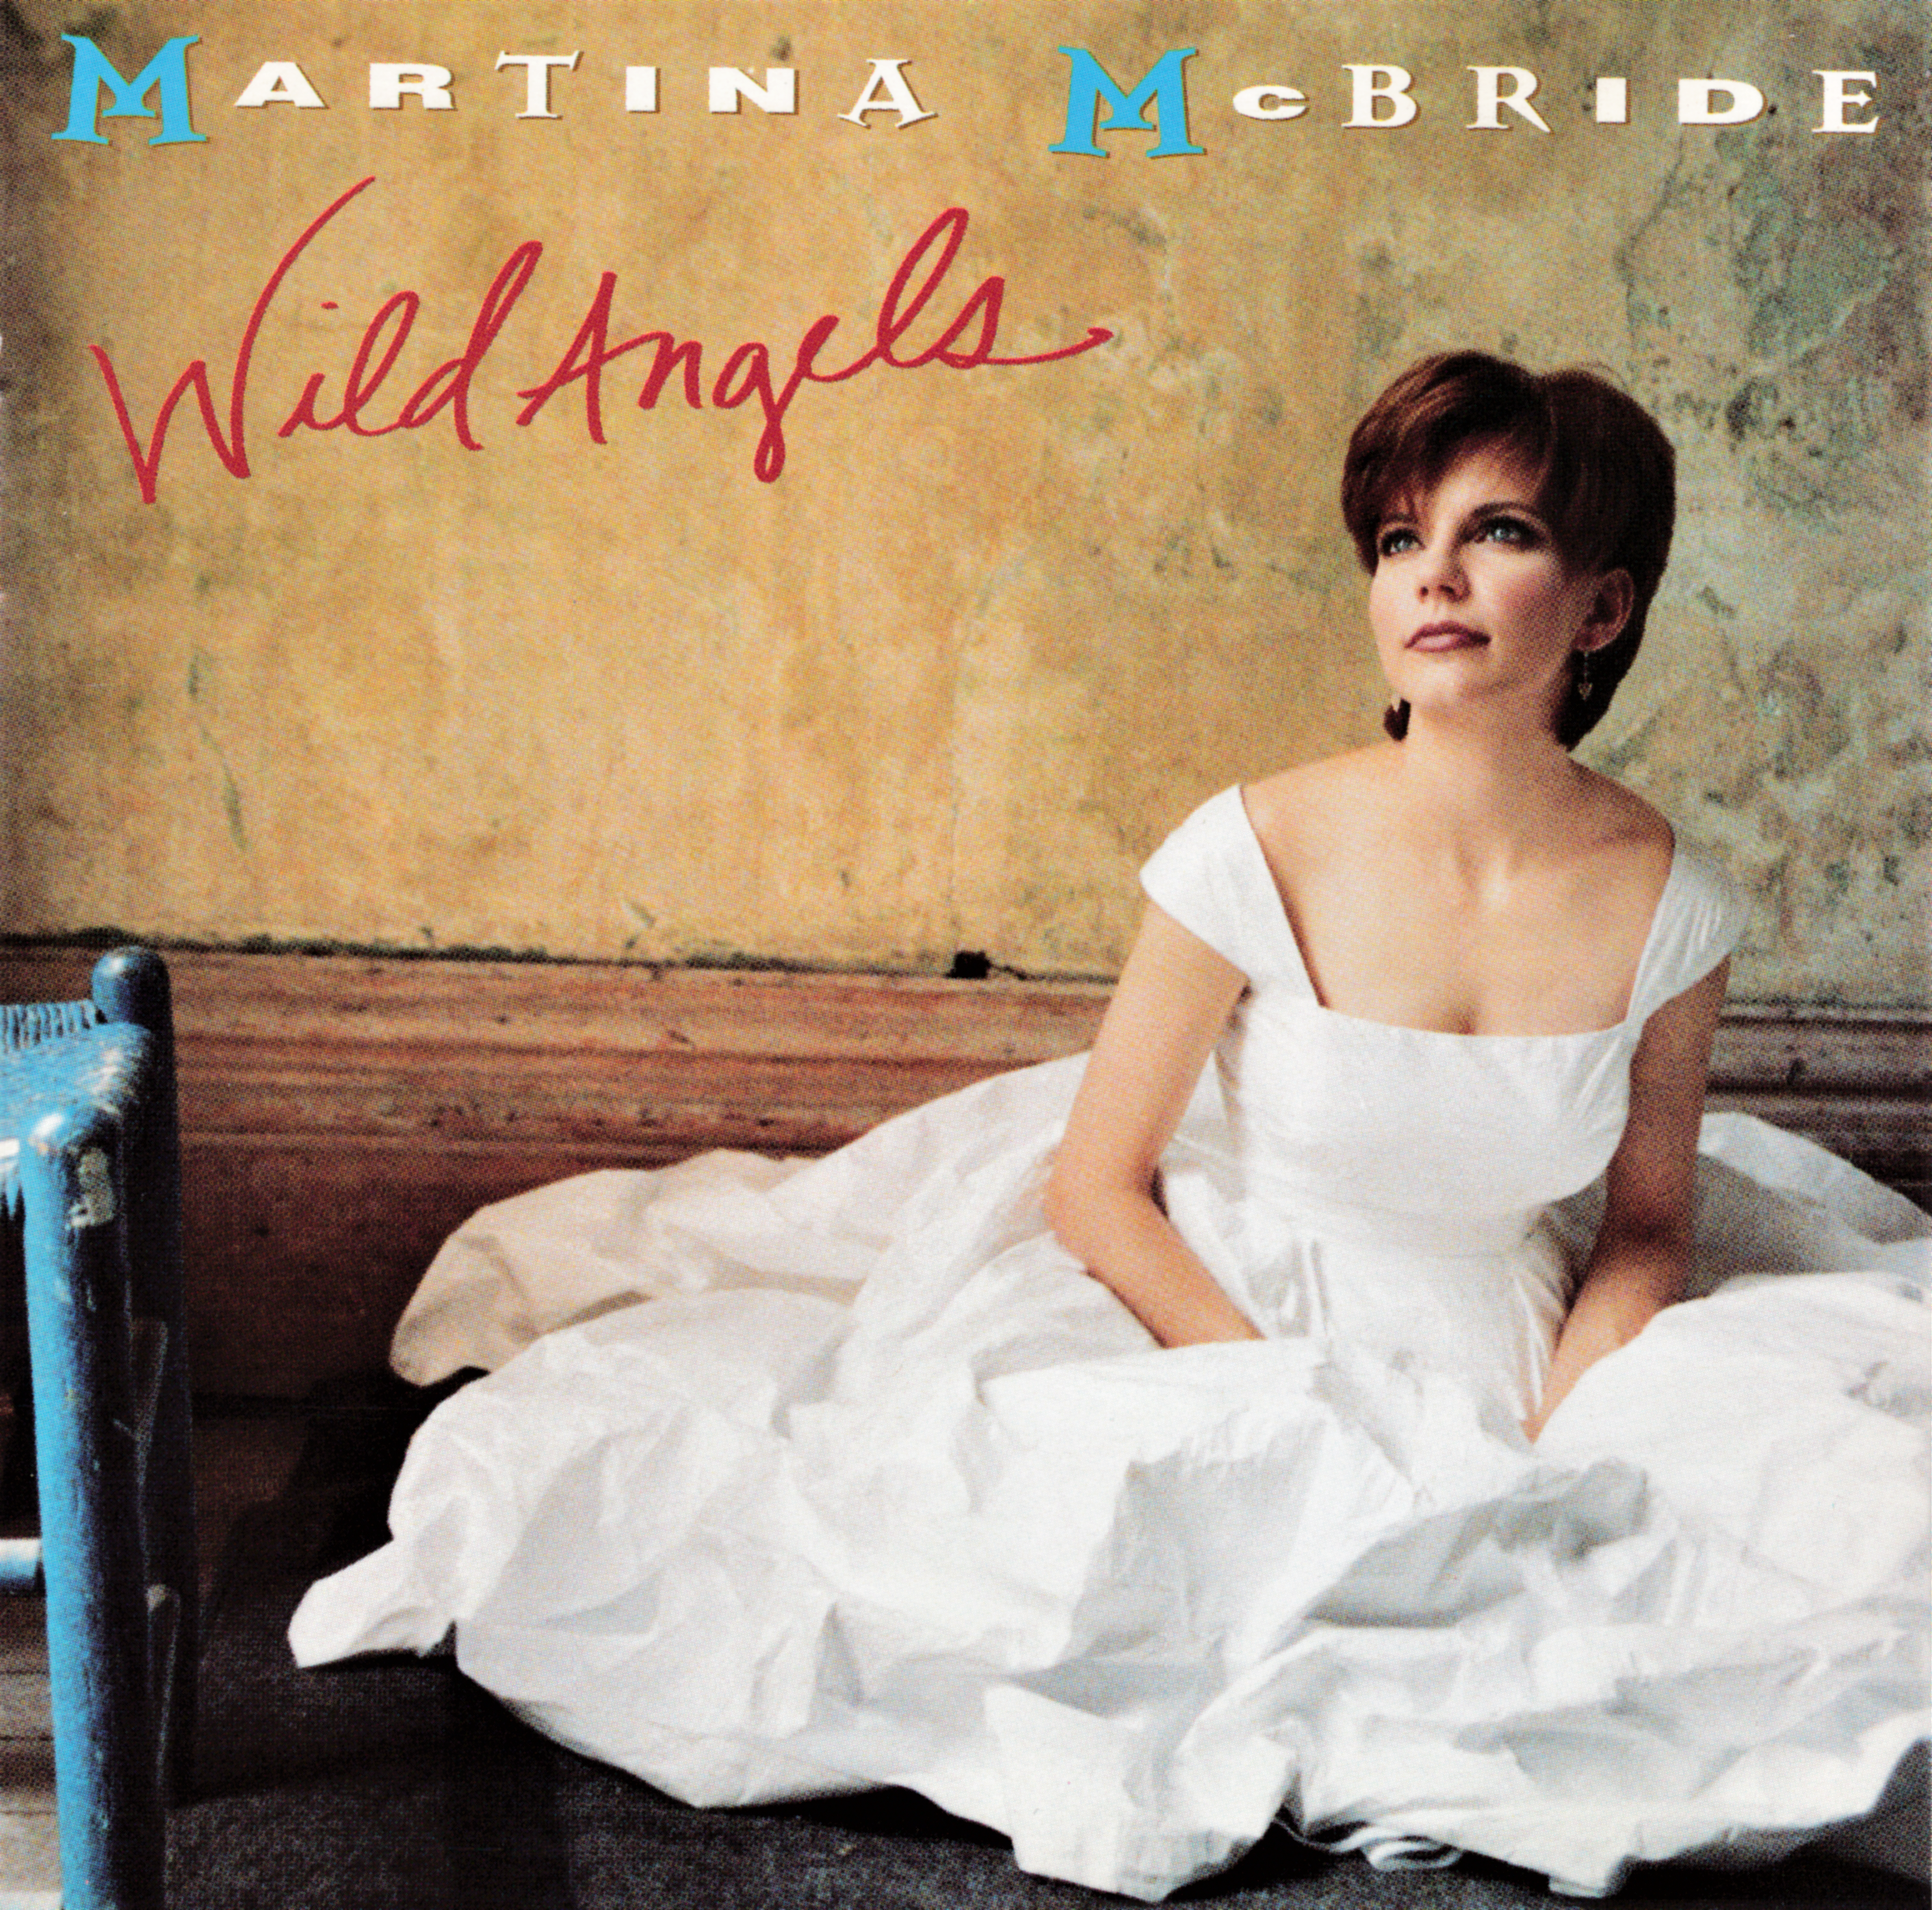 Martina McBride - Wild Angels - Album Cover